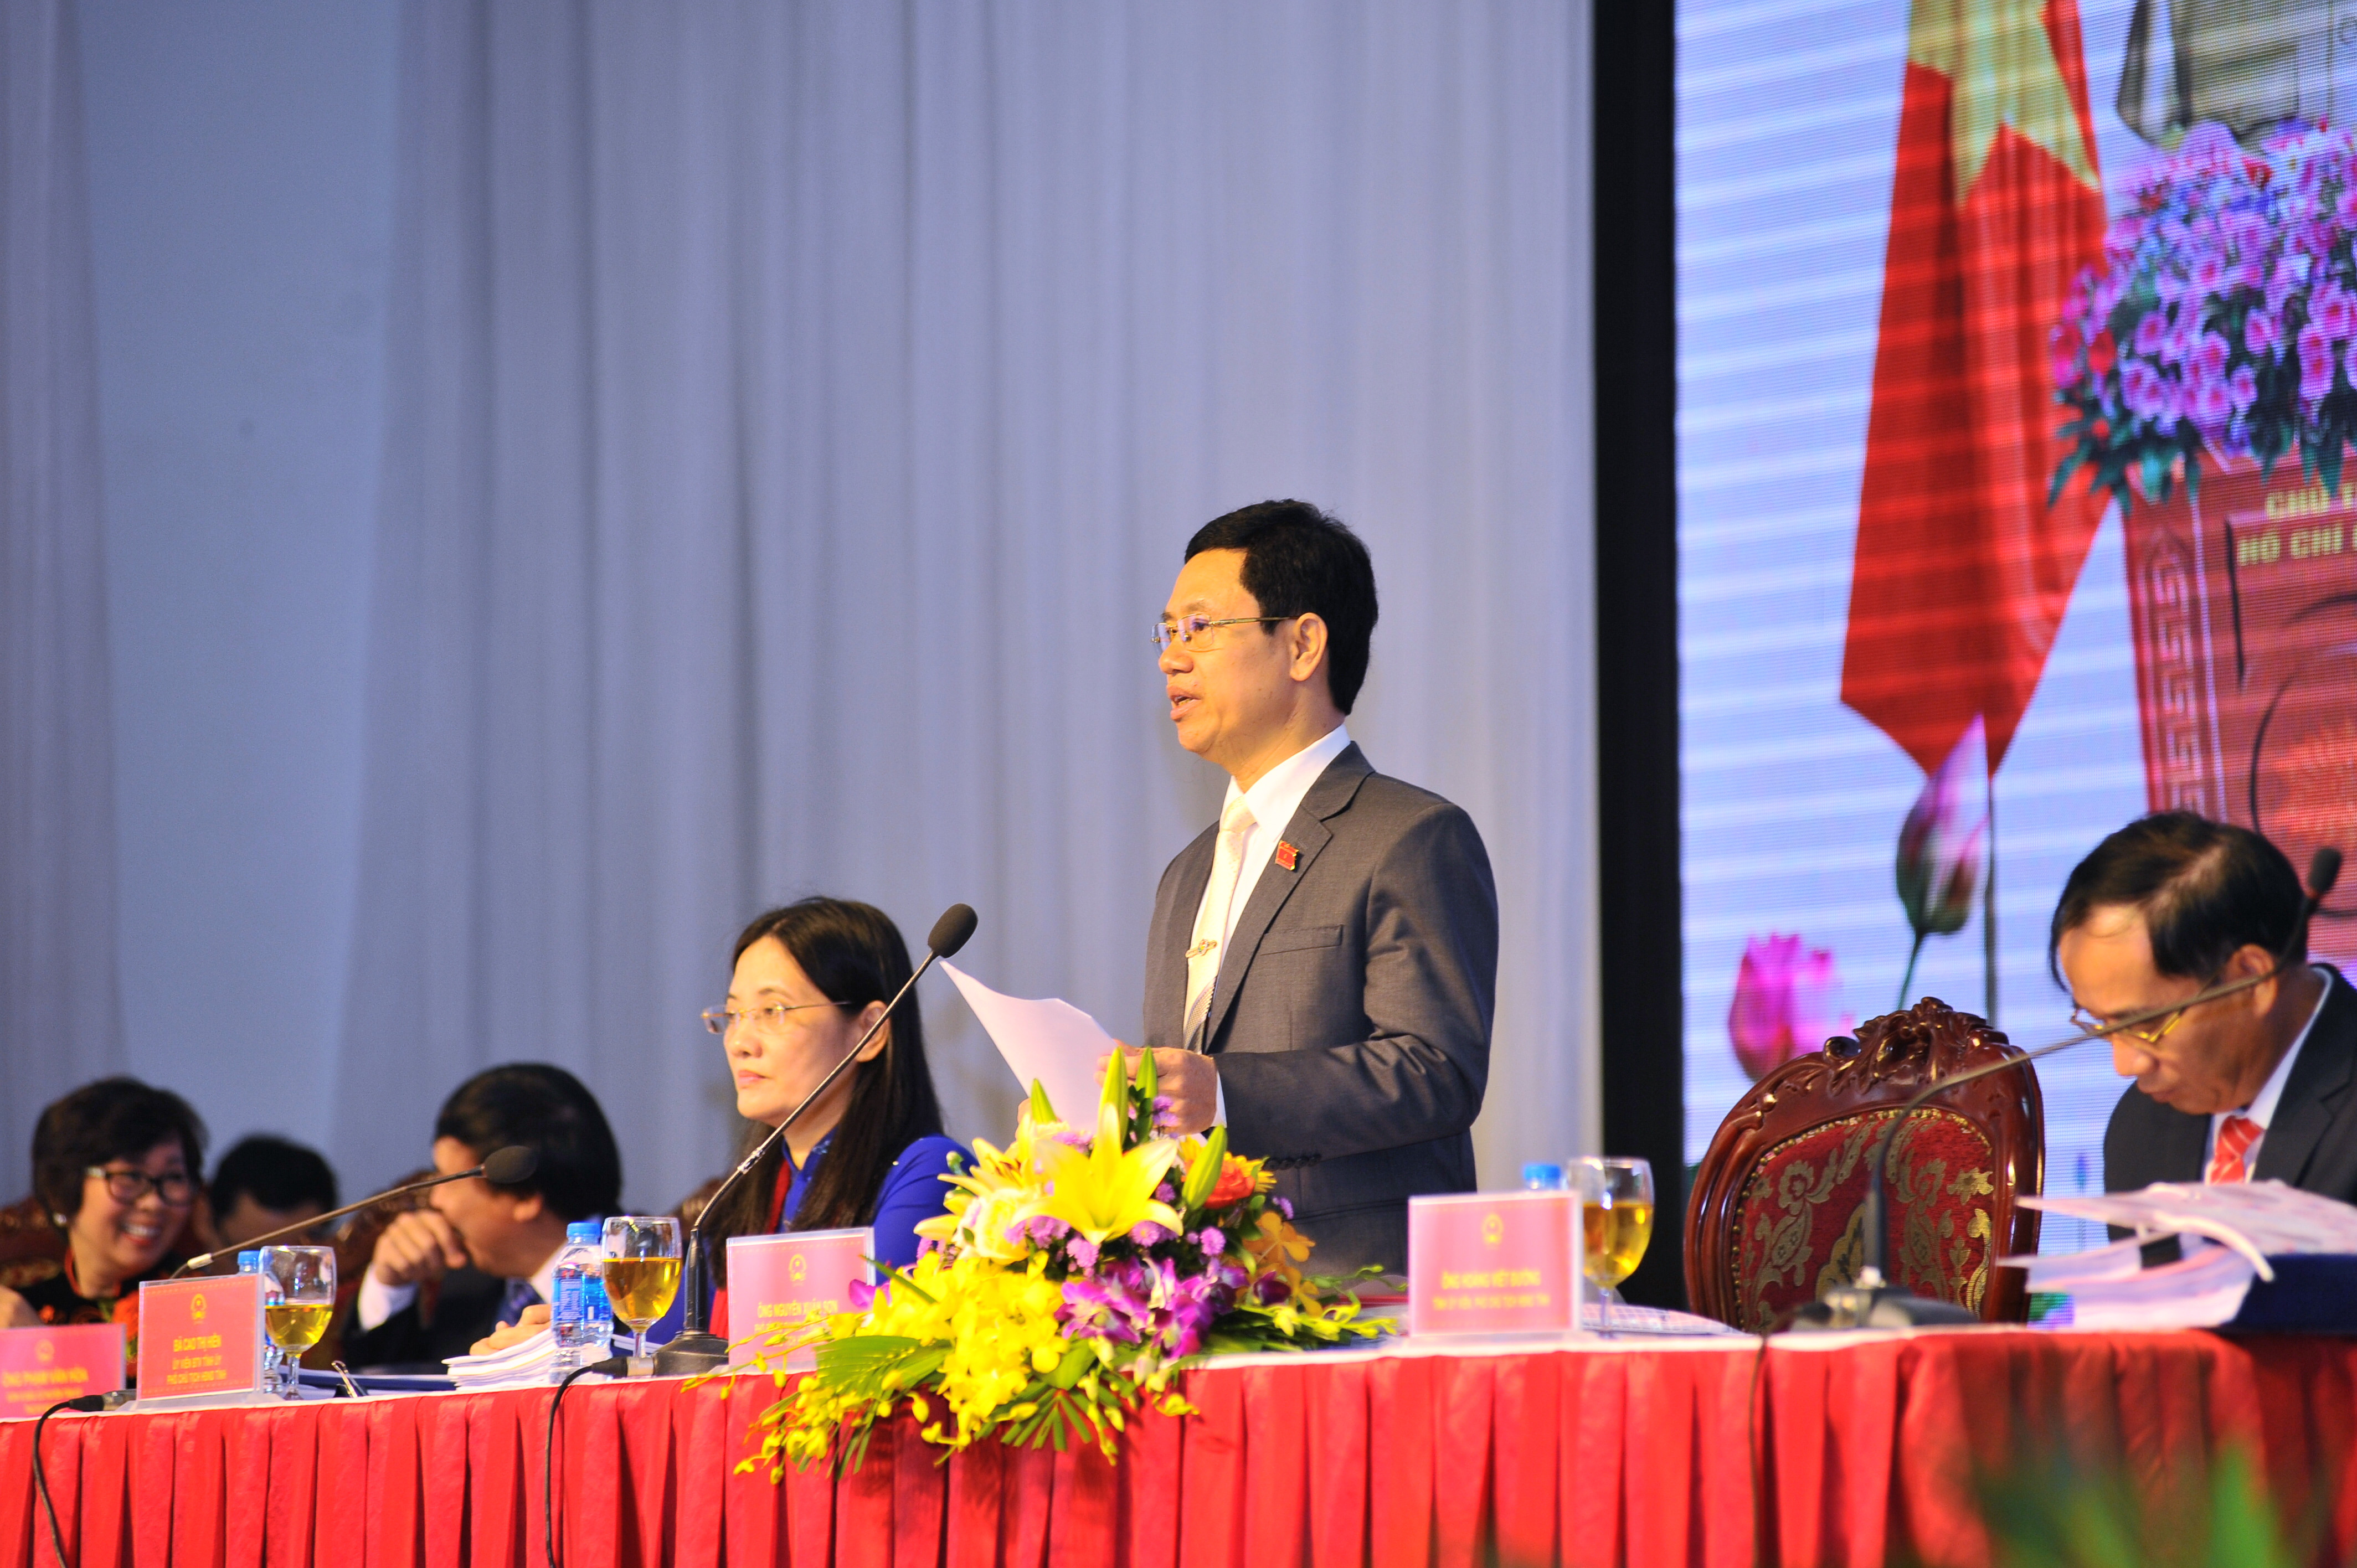 Chủ tịch HĐND tỉnh Nguyễn Xuân Sơn giải trình một số kiến nghị, phản ánh của cử tri. Ảnh: Mai Hoa